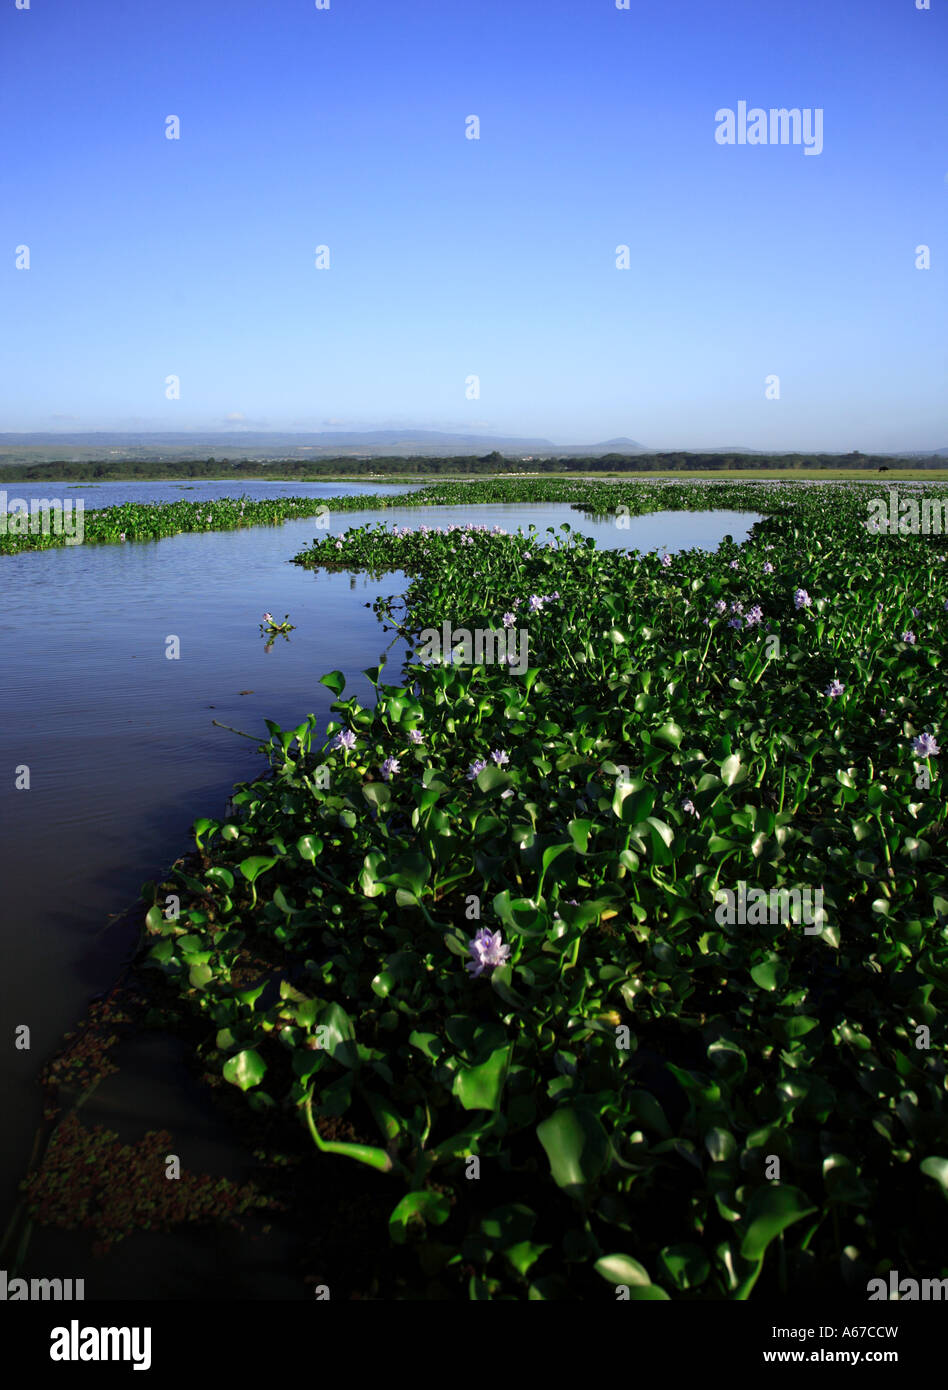 La jacinthe d'eau sur le lac Naivasha Kenya Afrique Banque D'Images